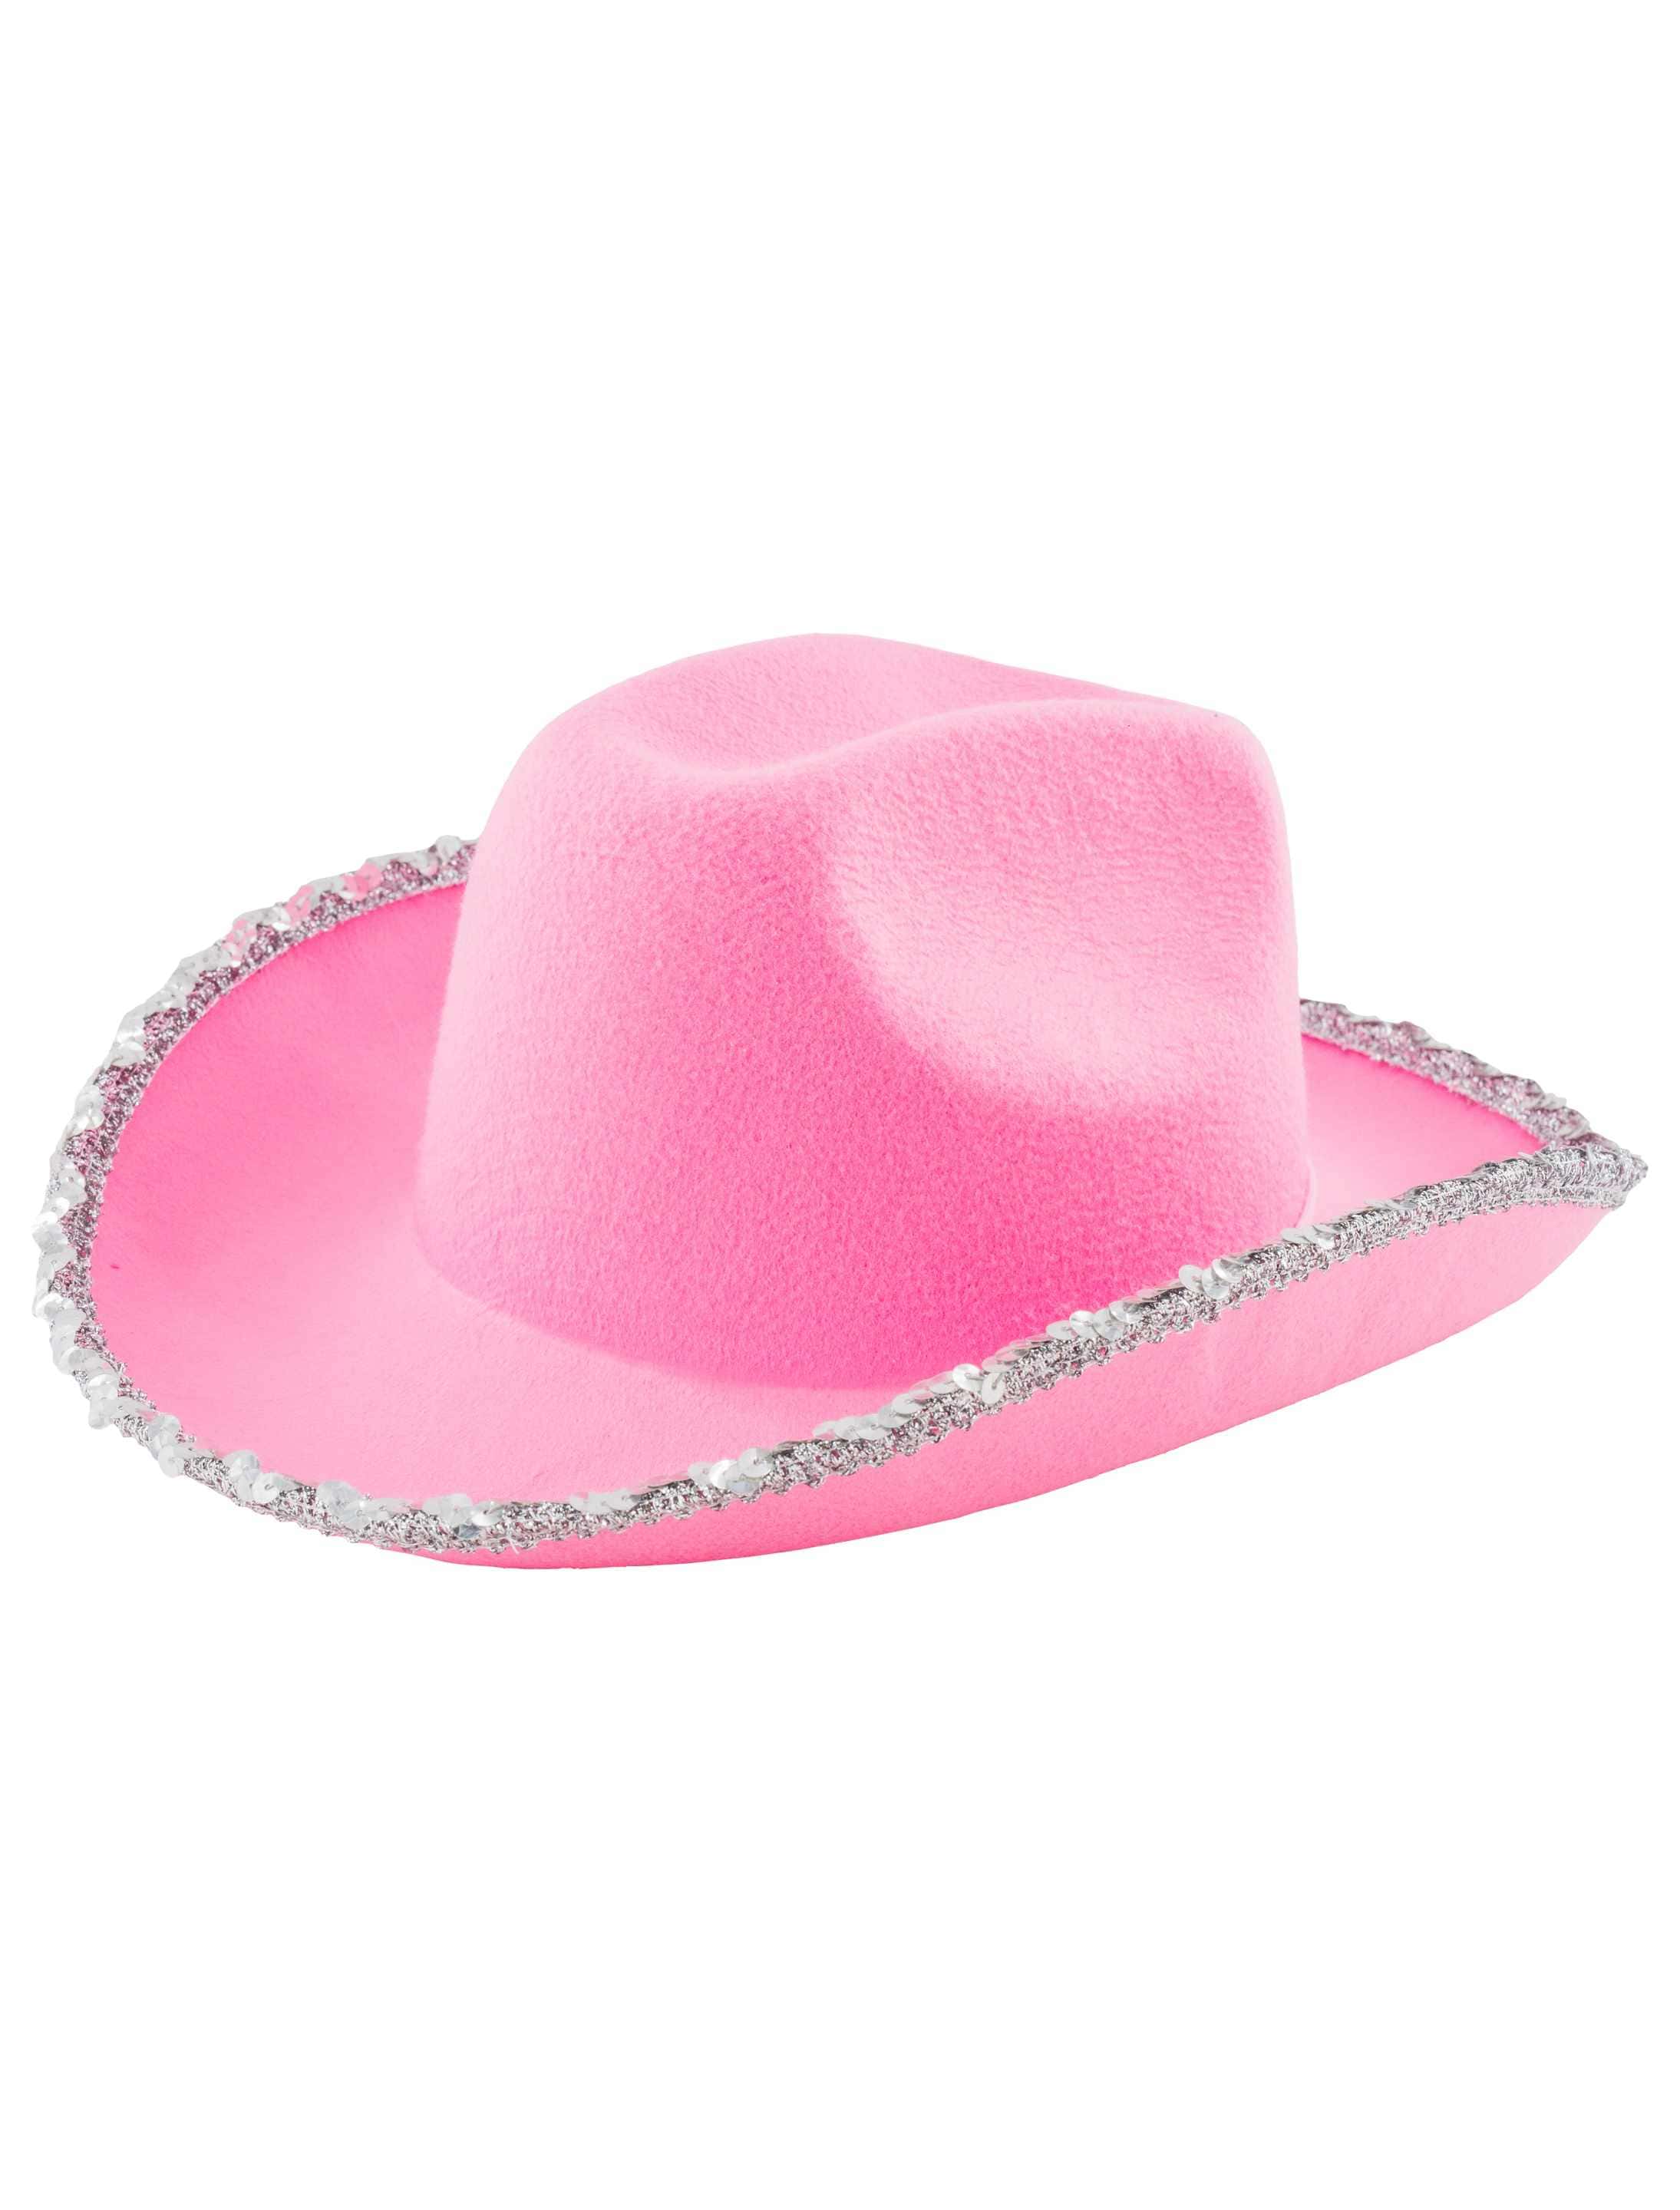 Cowgirlhut pink mit Pailletten one size